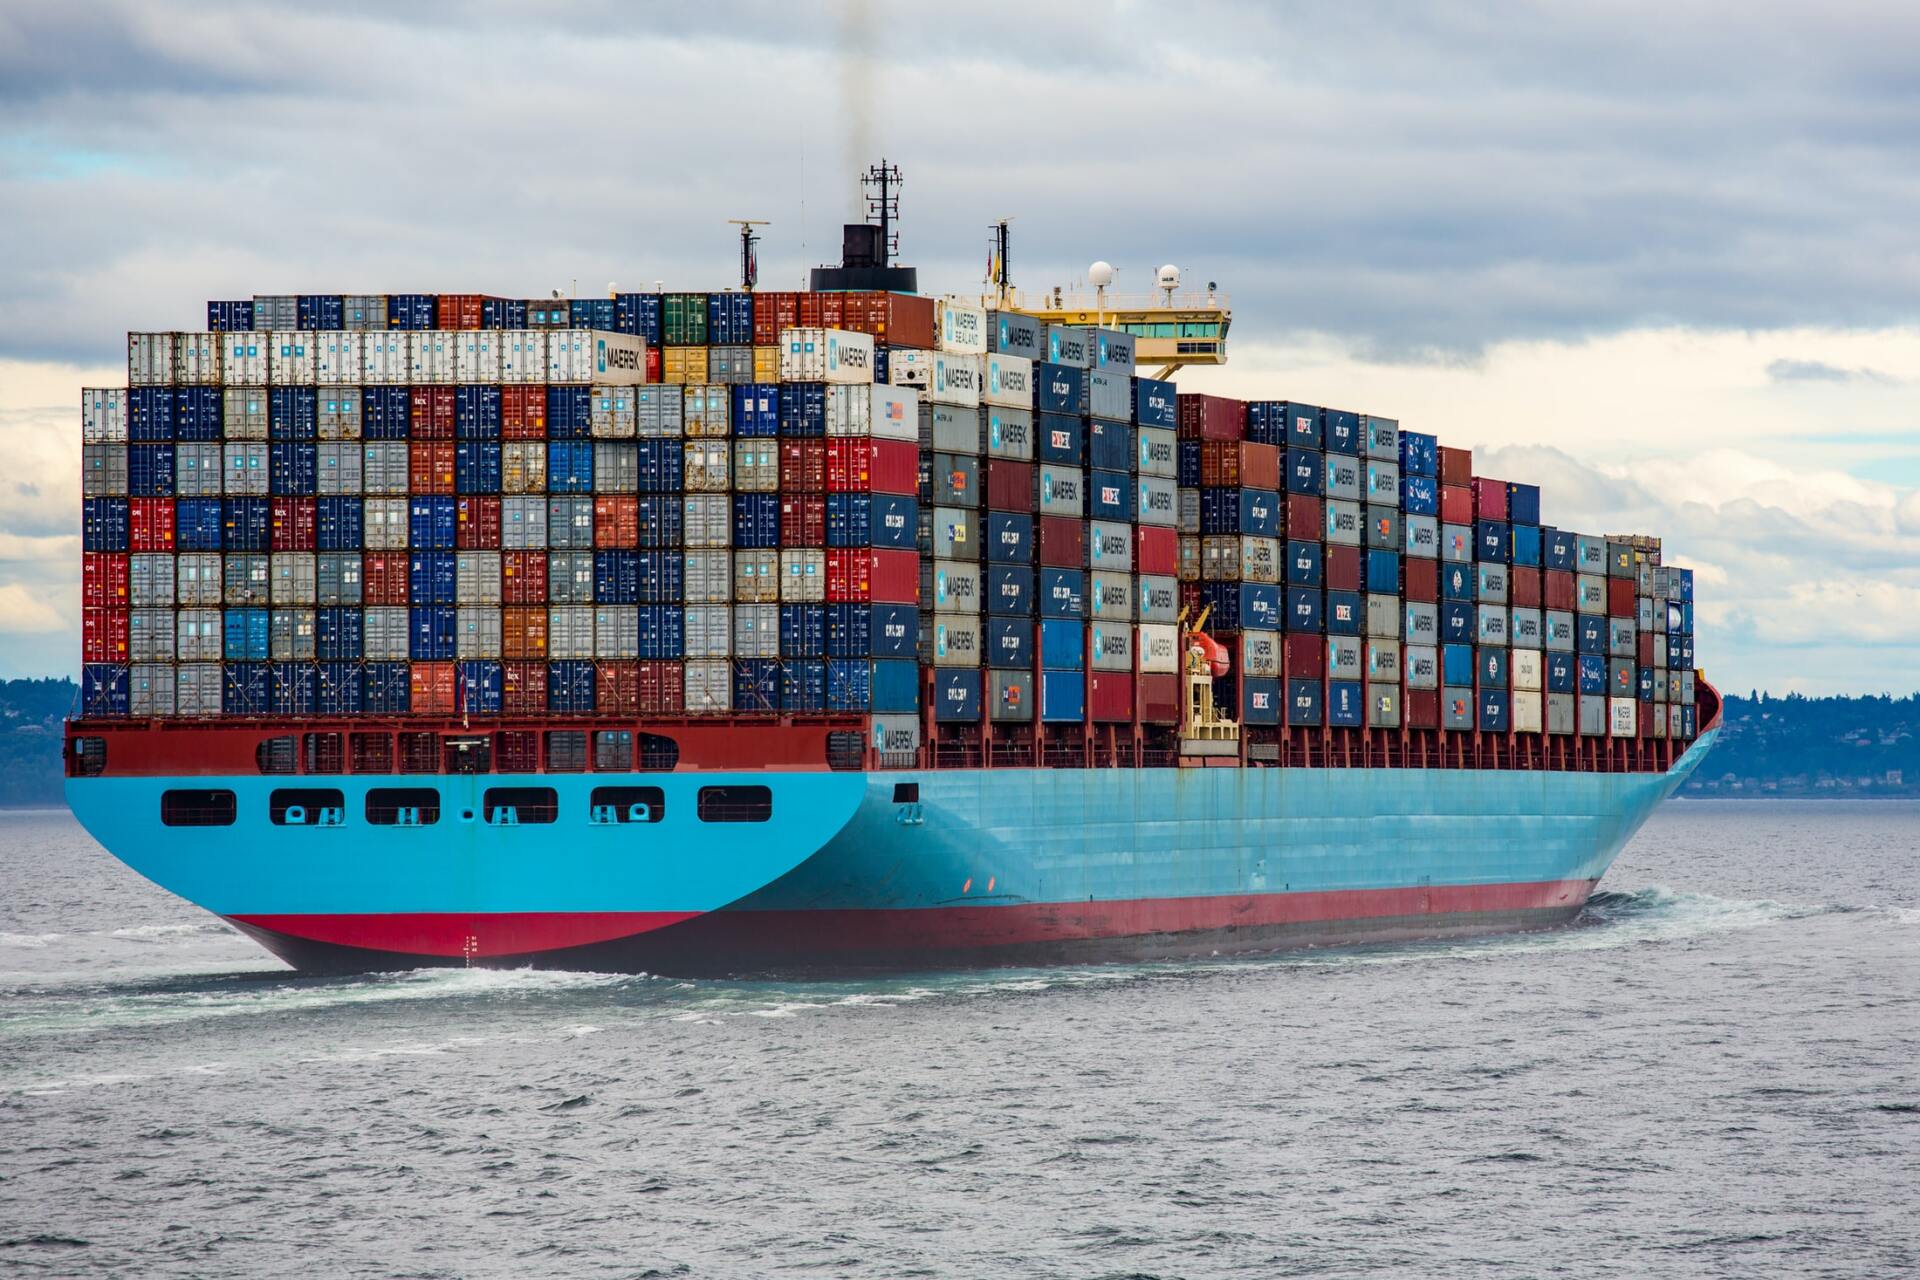 transporte de conteiners em navios